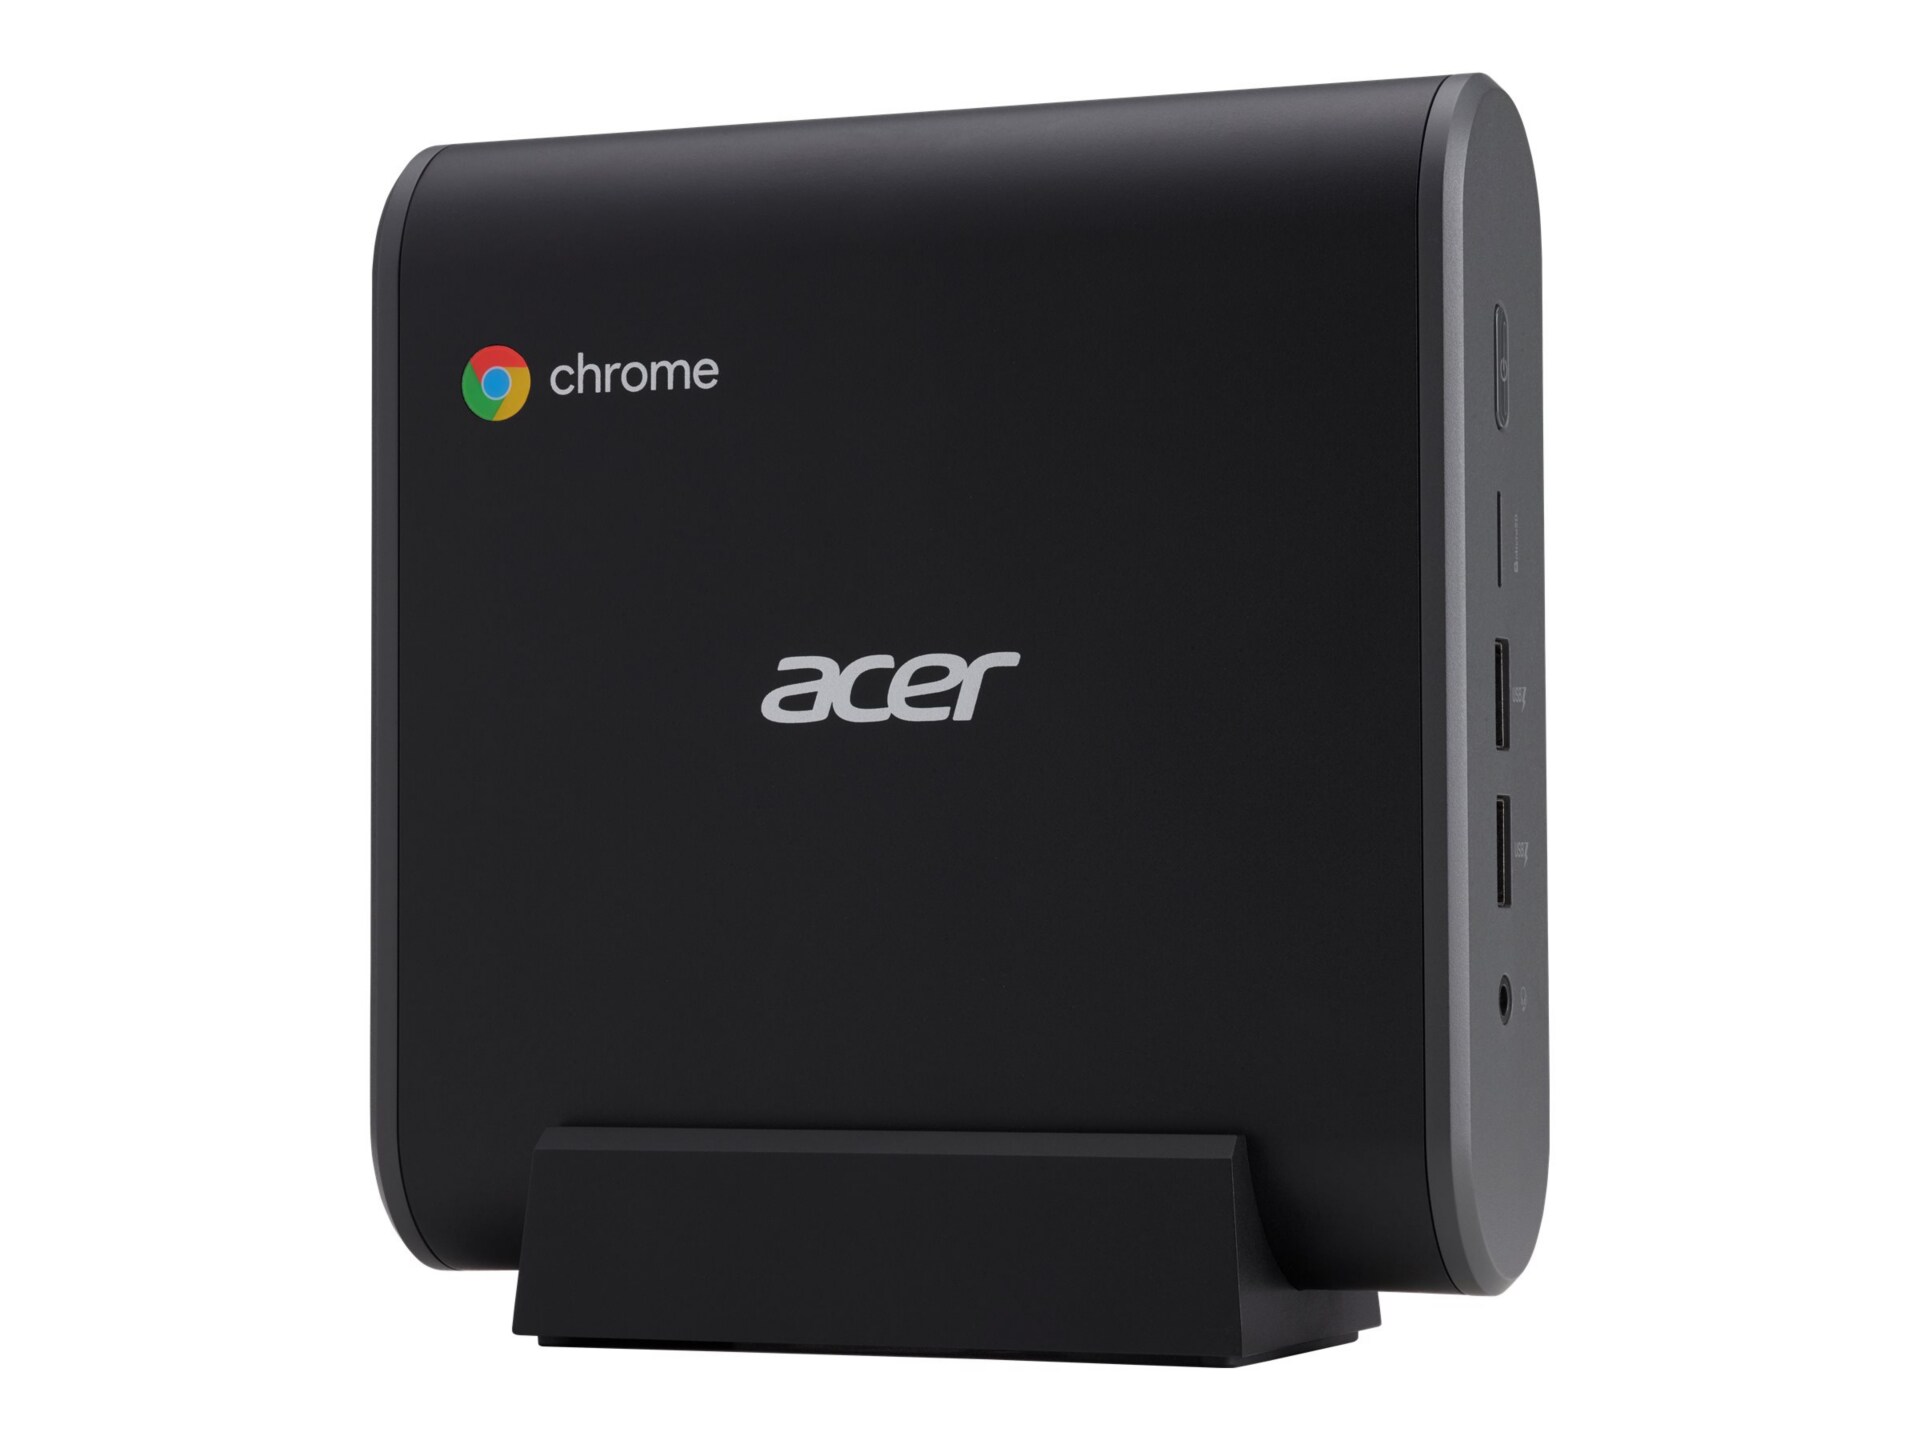 Acer Chromebox CXI3 - mini PC - Celeron 3867U 1.8 GHz - 4 GB - SSD 32 GB